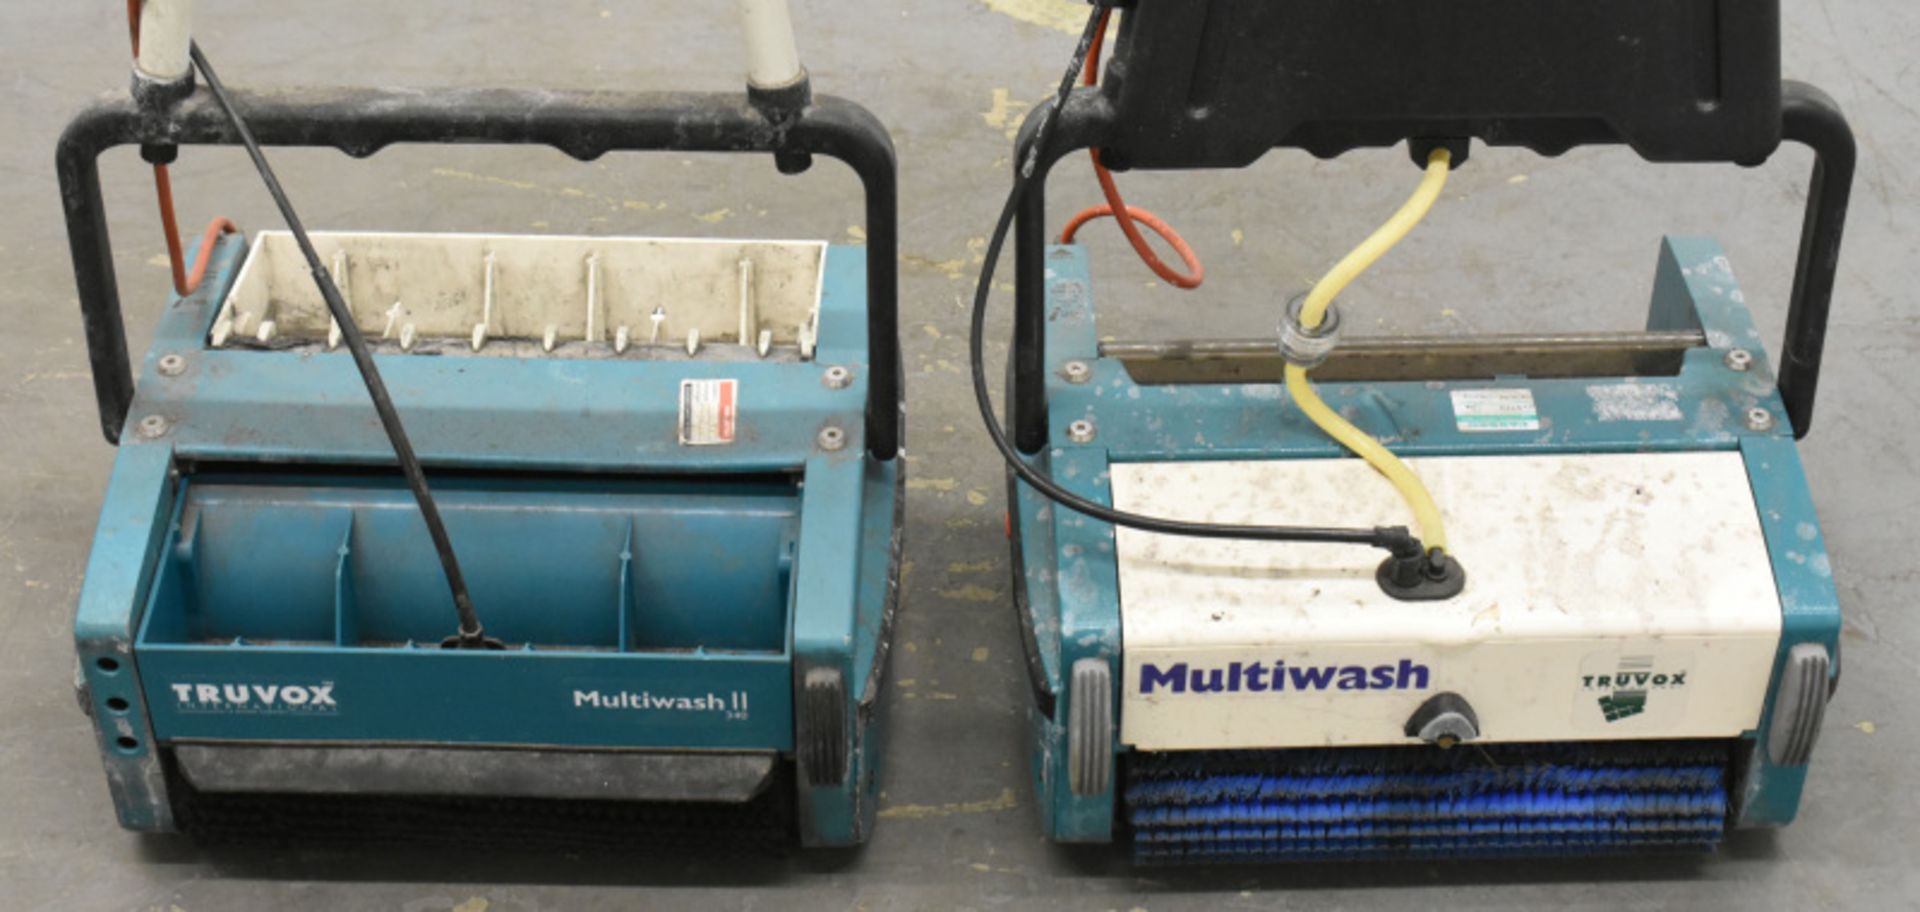 1 x Truvox Multiwash Floor Scrubber Dryer, Model- MW340/Pump, 1 x Truvox Multiwash Floor Scrubber Dr - Image 2 of 6